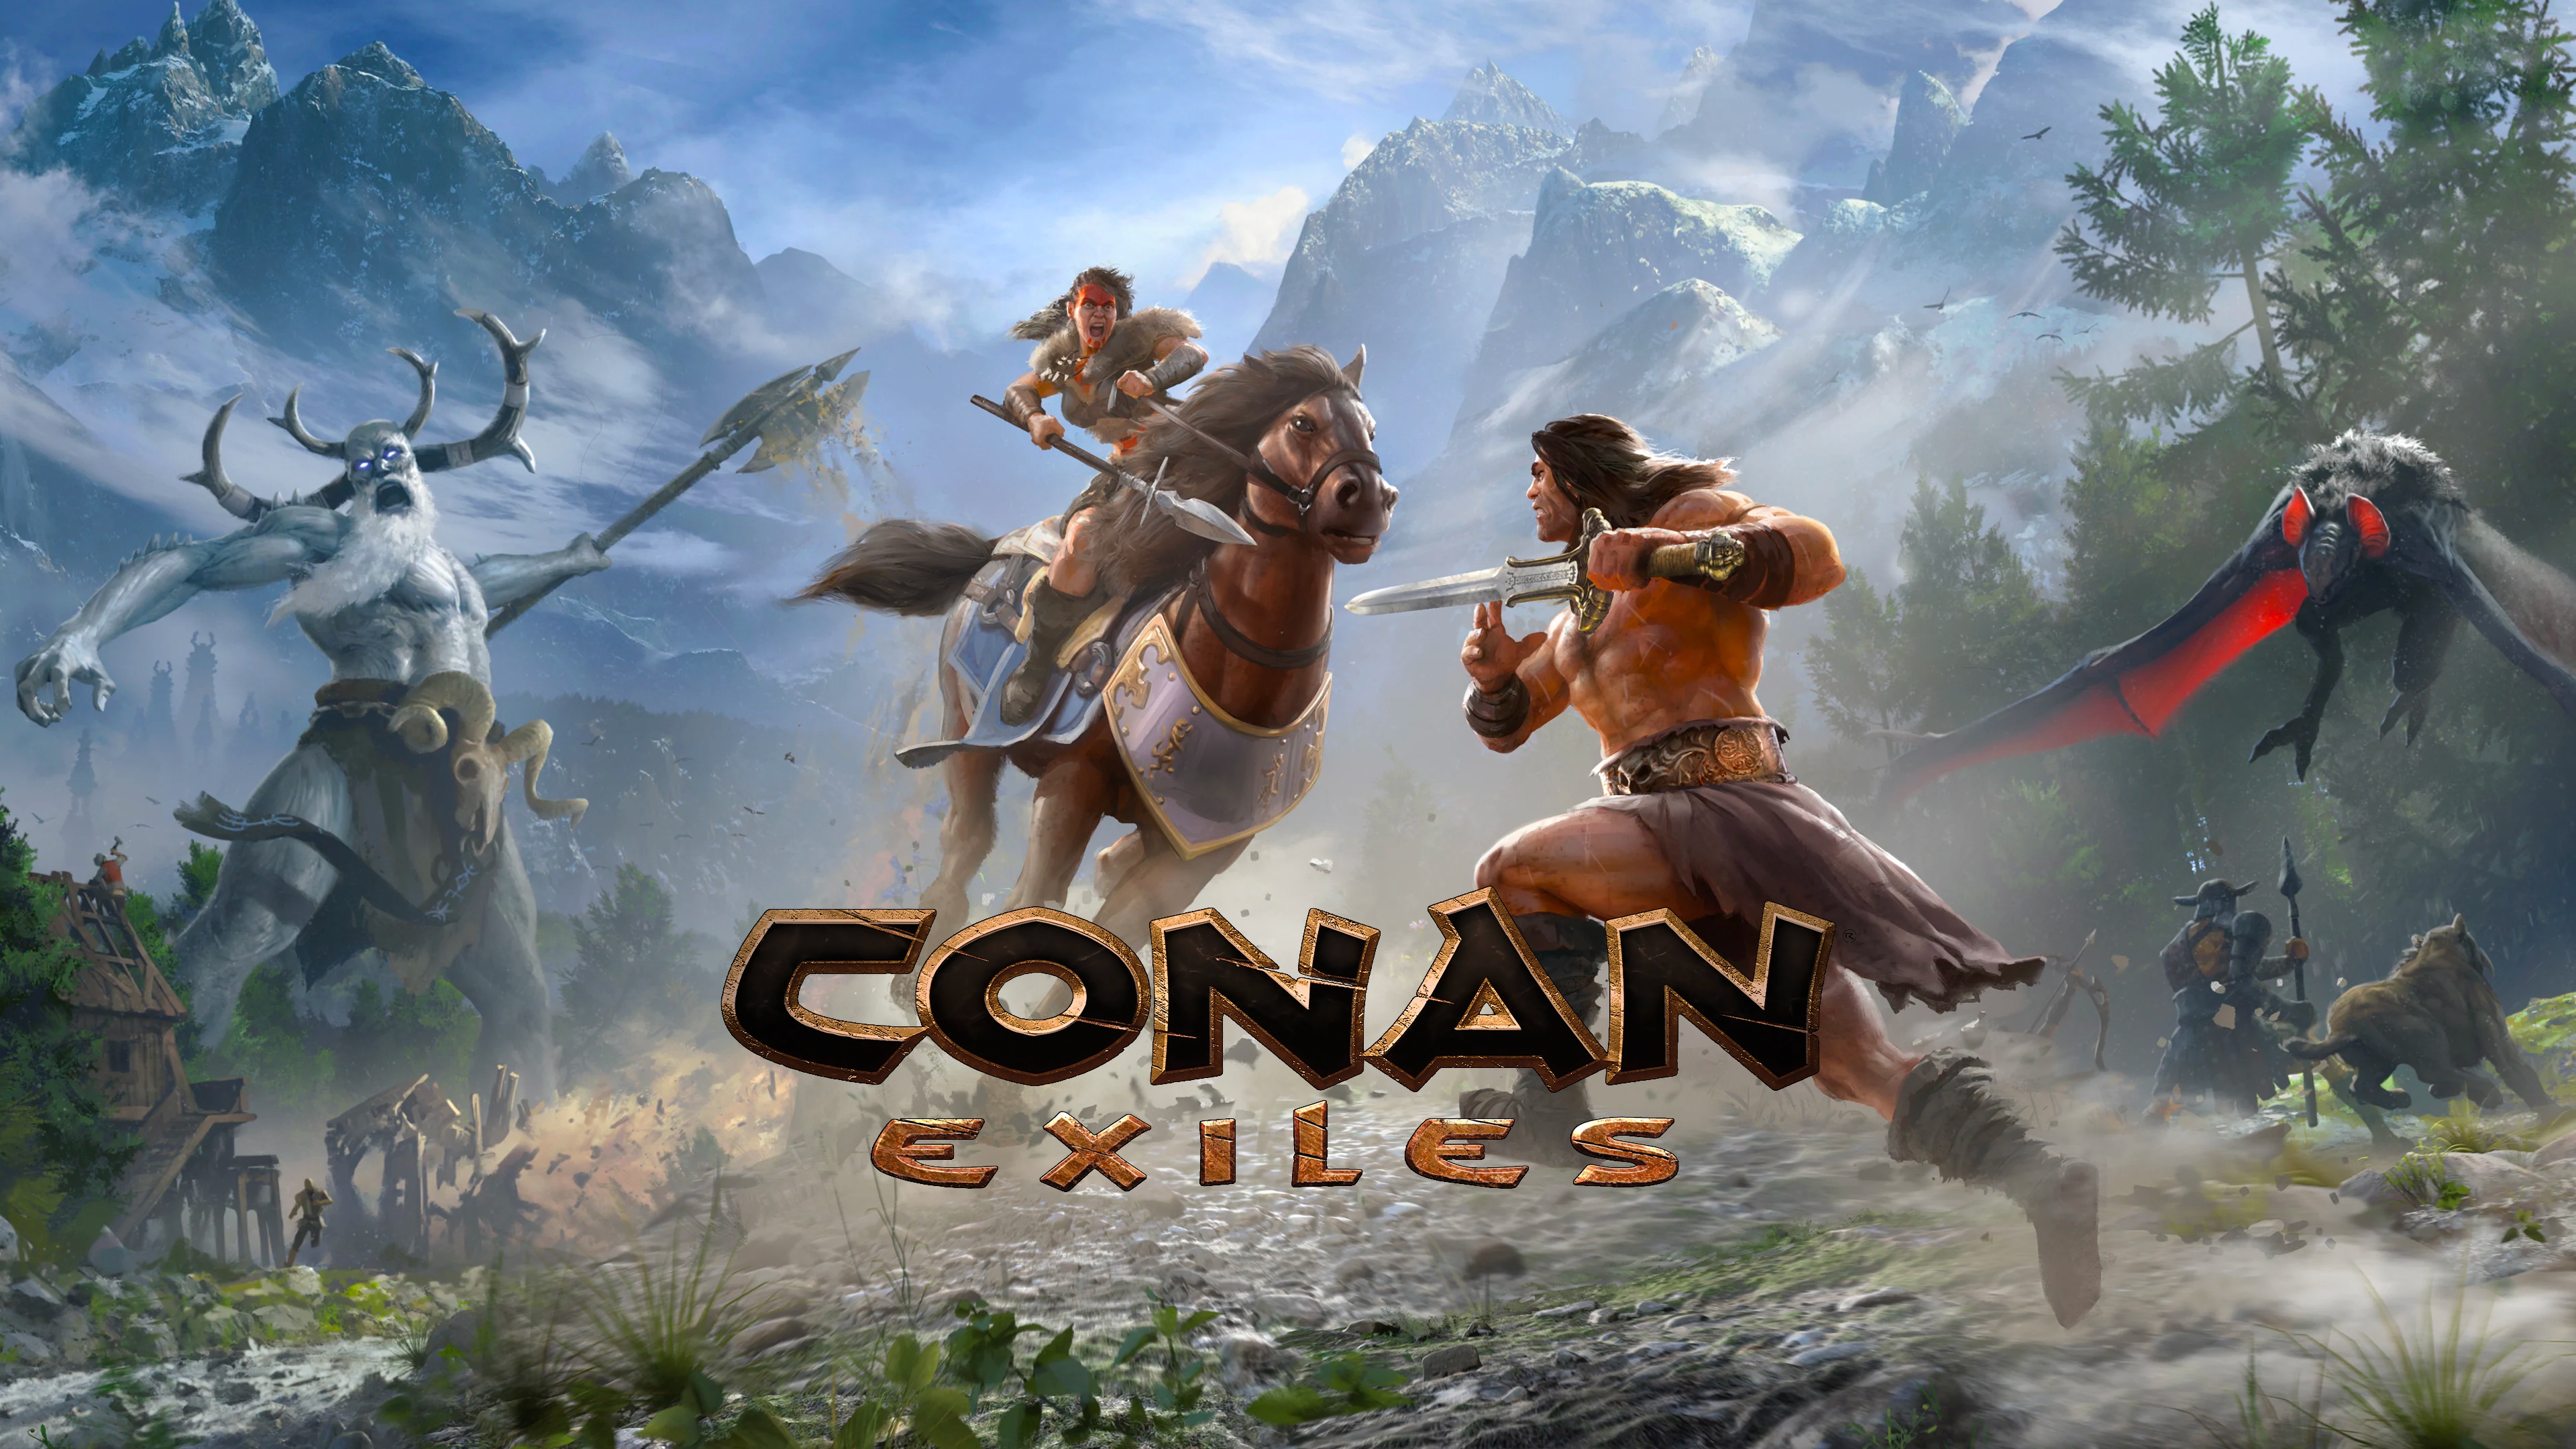 Conan Exiles - PC - Buy it at Nuuvem